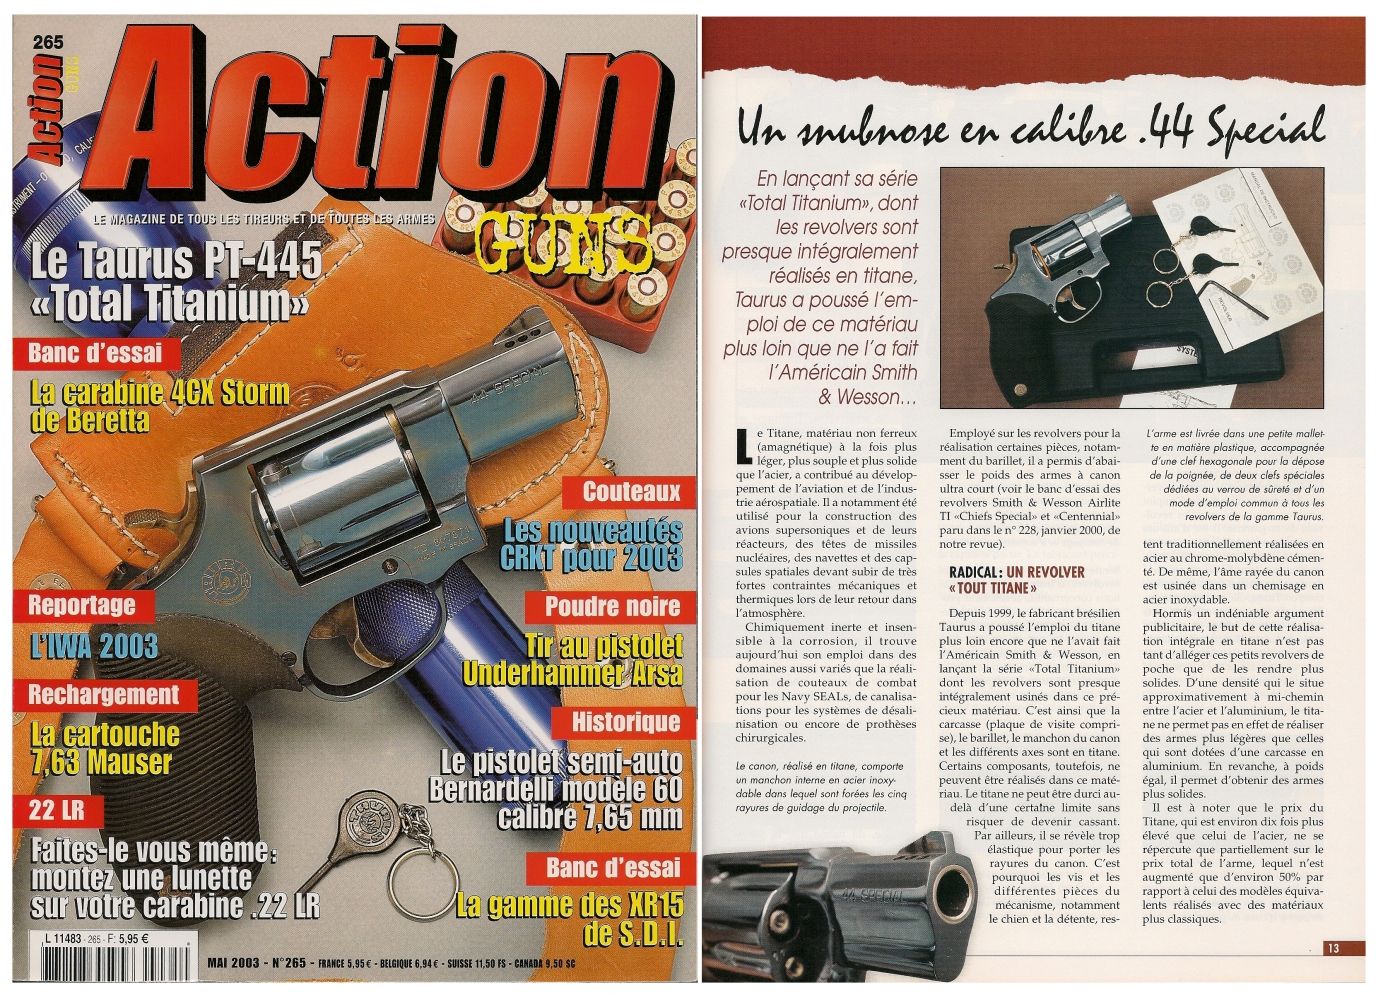 Le banc d’essai du revolver Taurus PT-445 All Titanium a été publié sur 6 pages dans le magazine Action Guns n° 265 (mai 2003). 